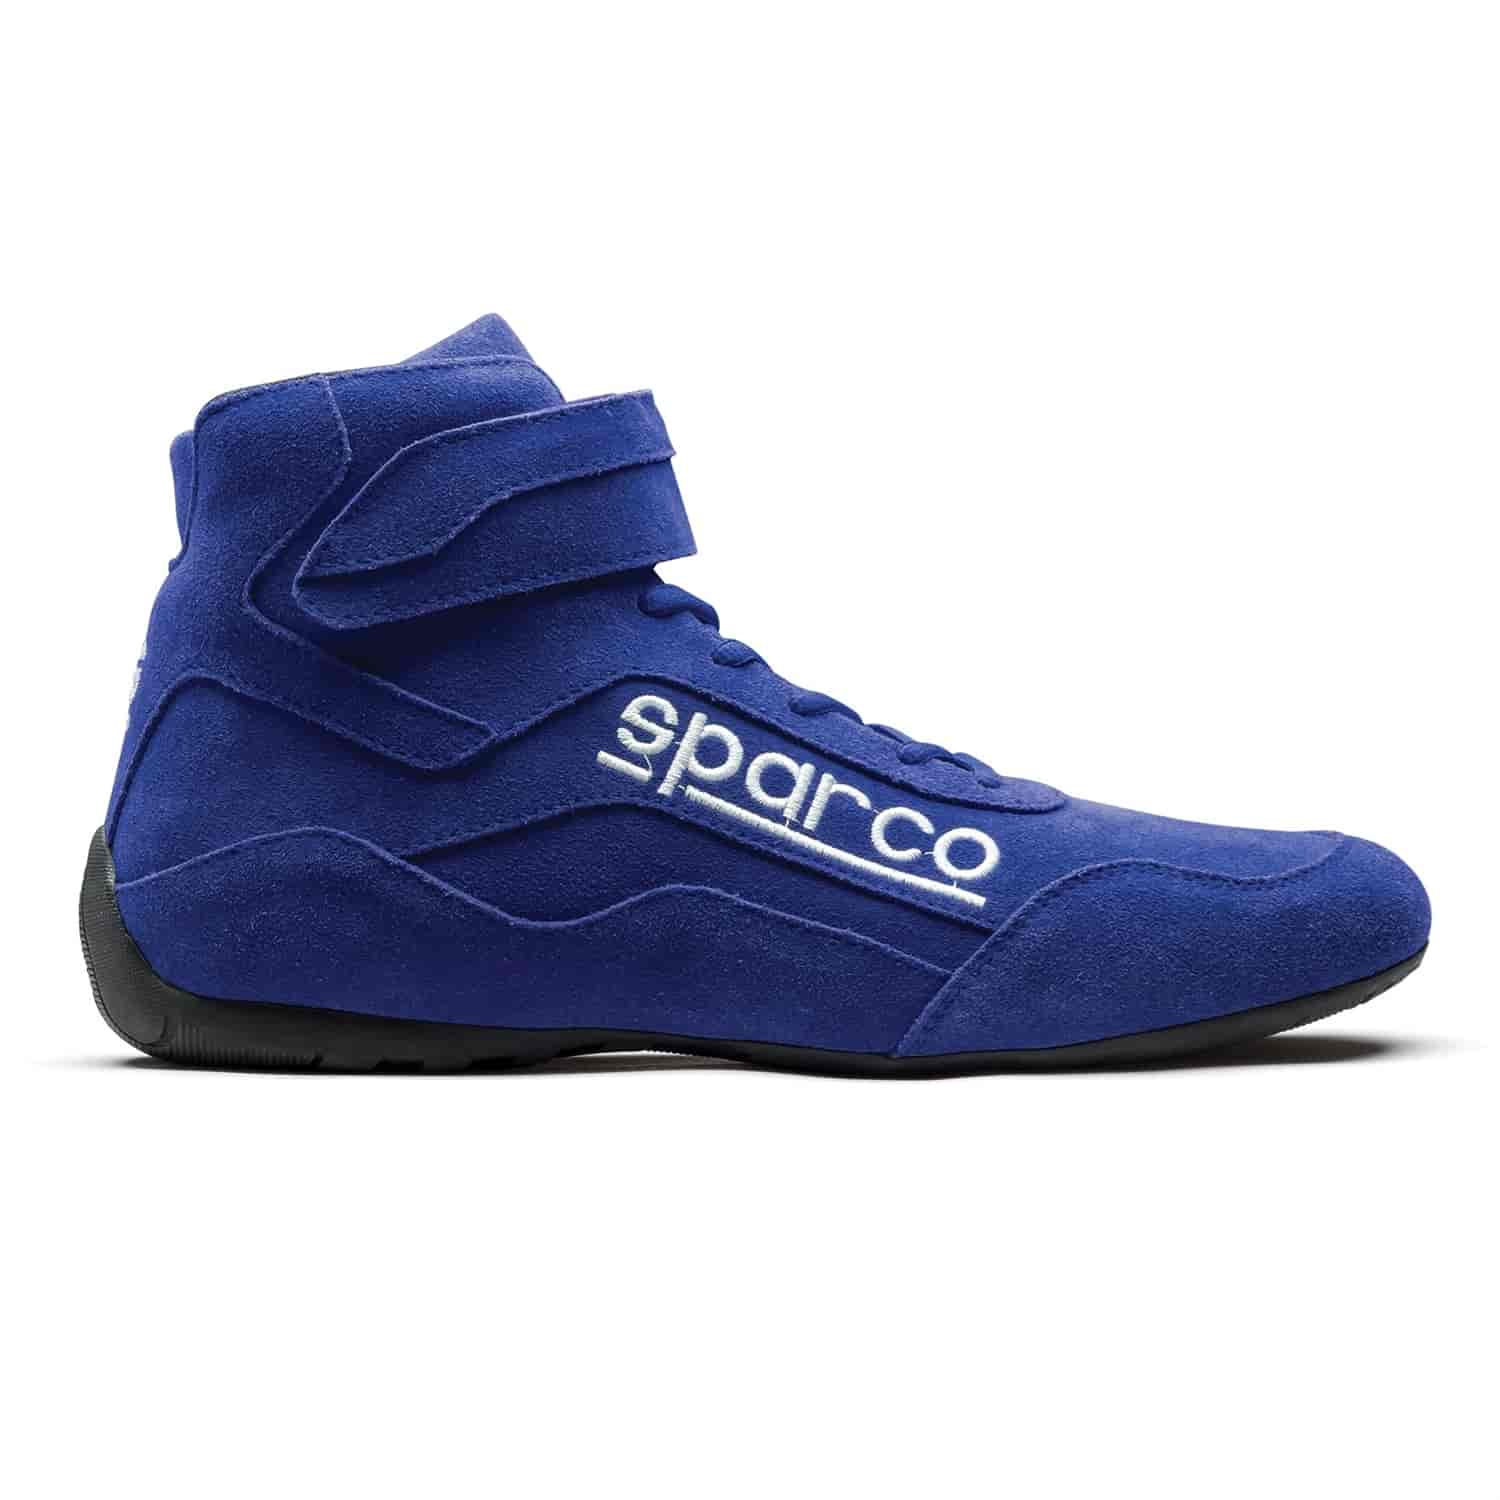 Race 2 Shoe Size 7.5 - Blue